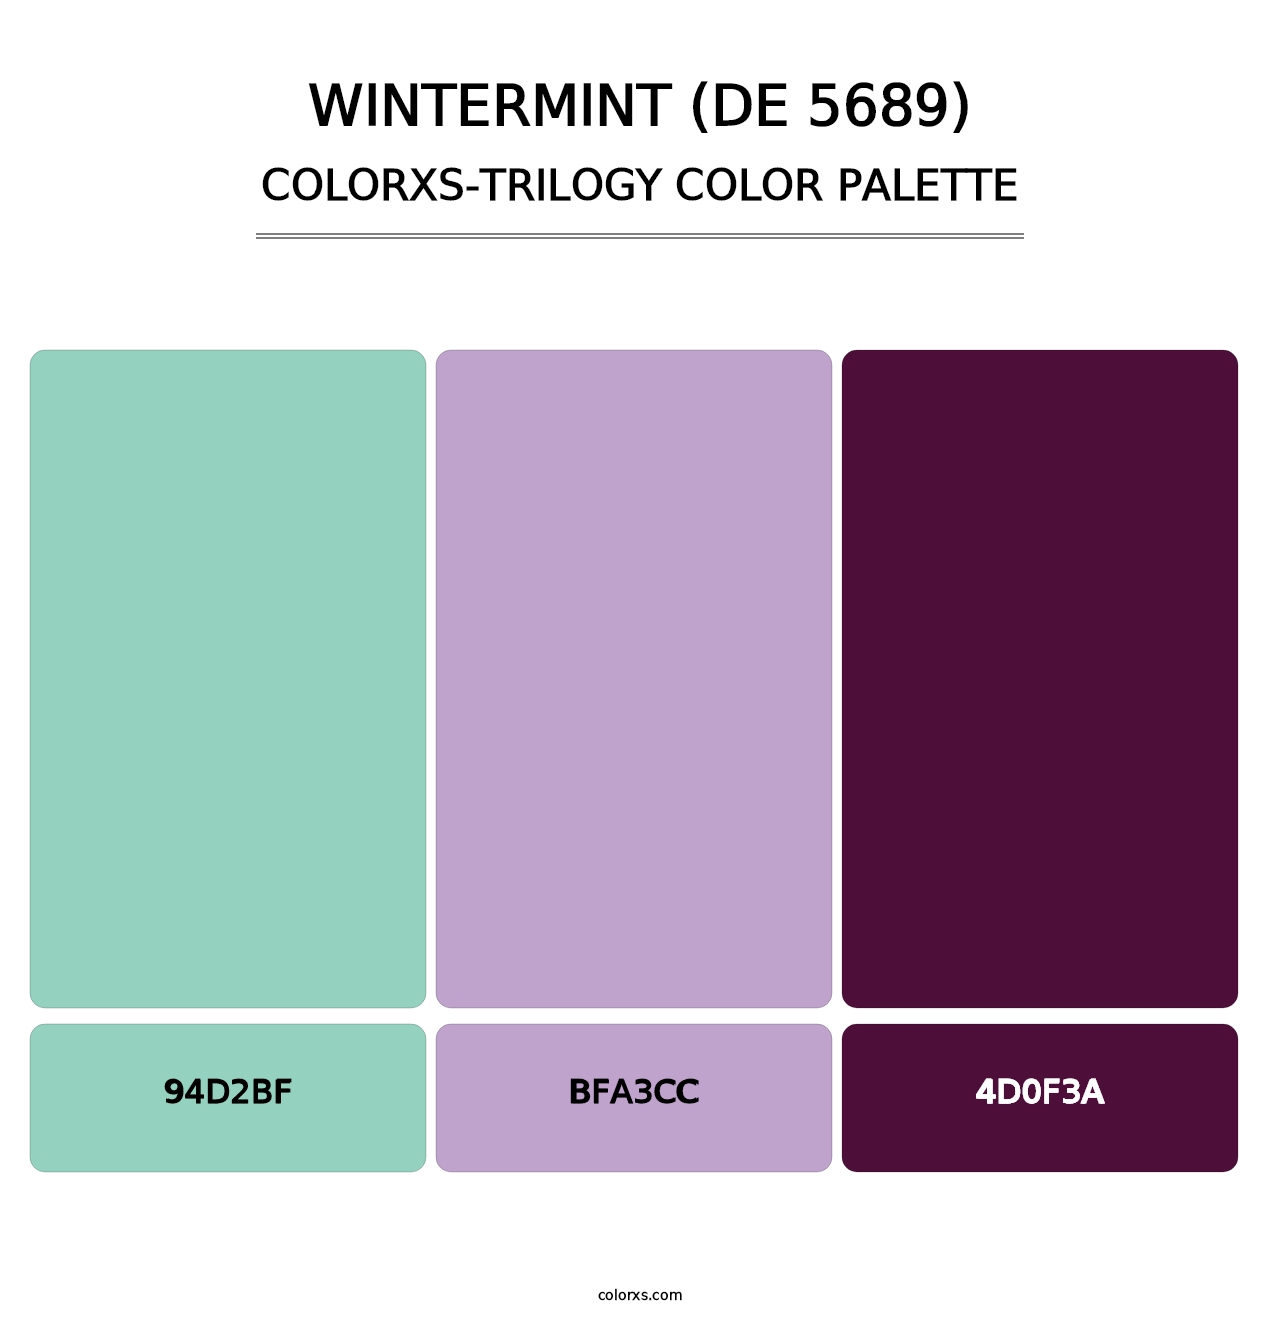 Wintermint (DE 5689) - Colorxs Trilogy Palette